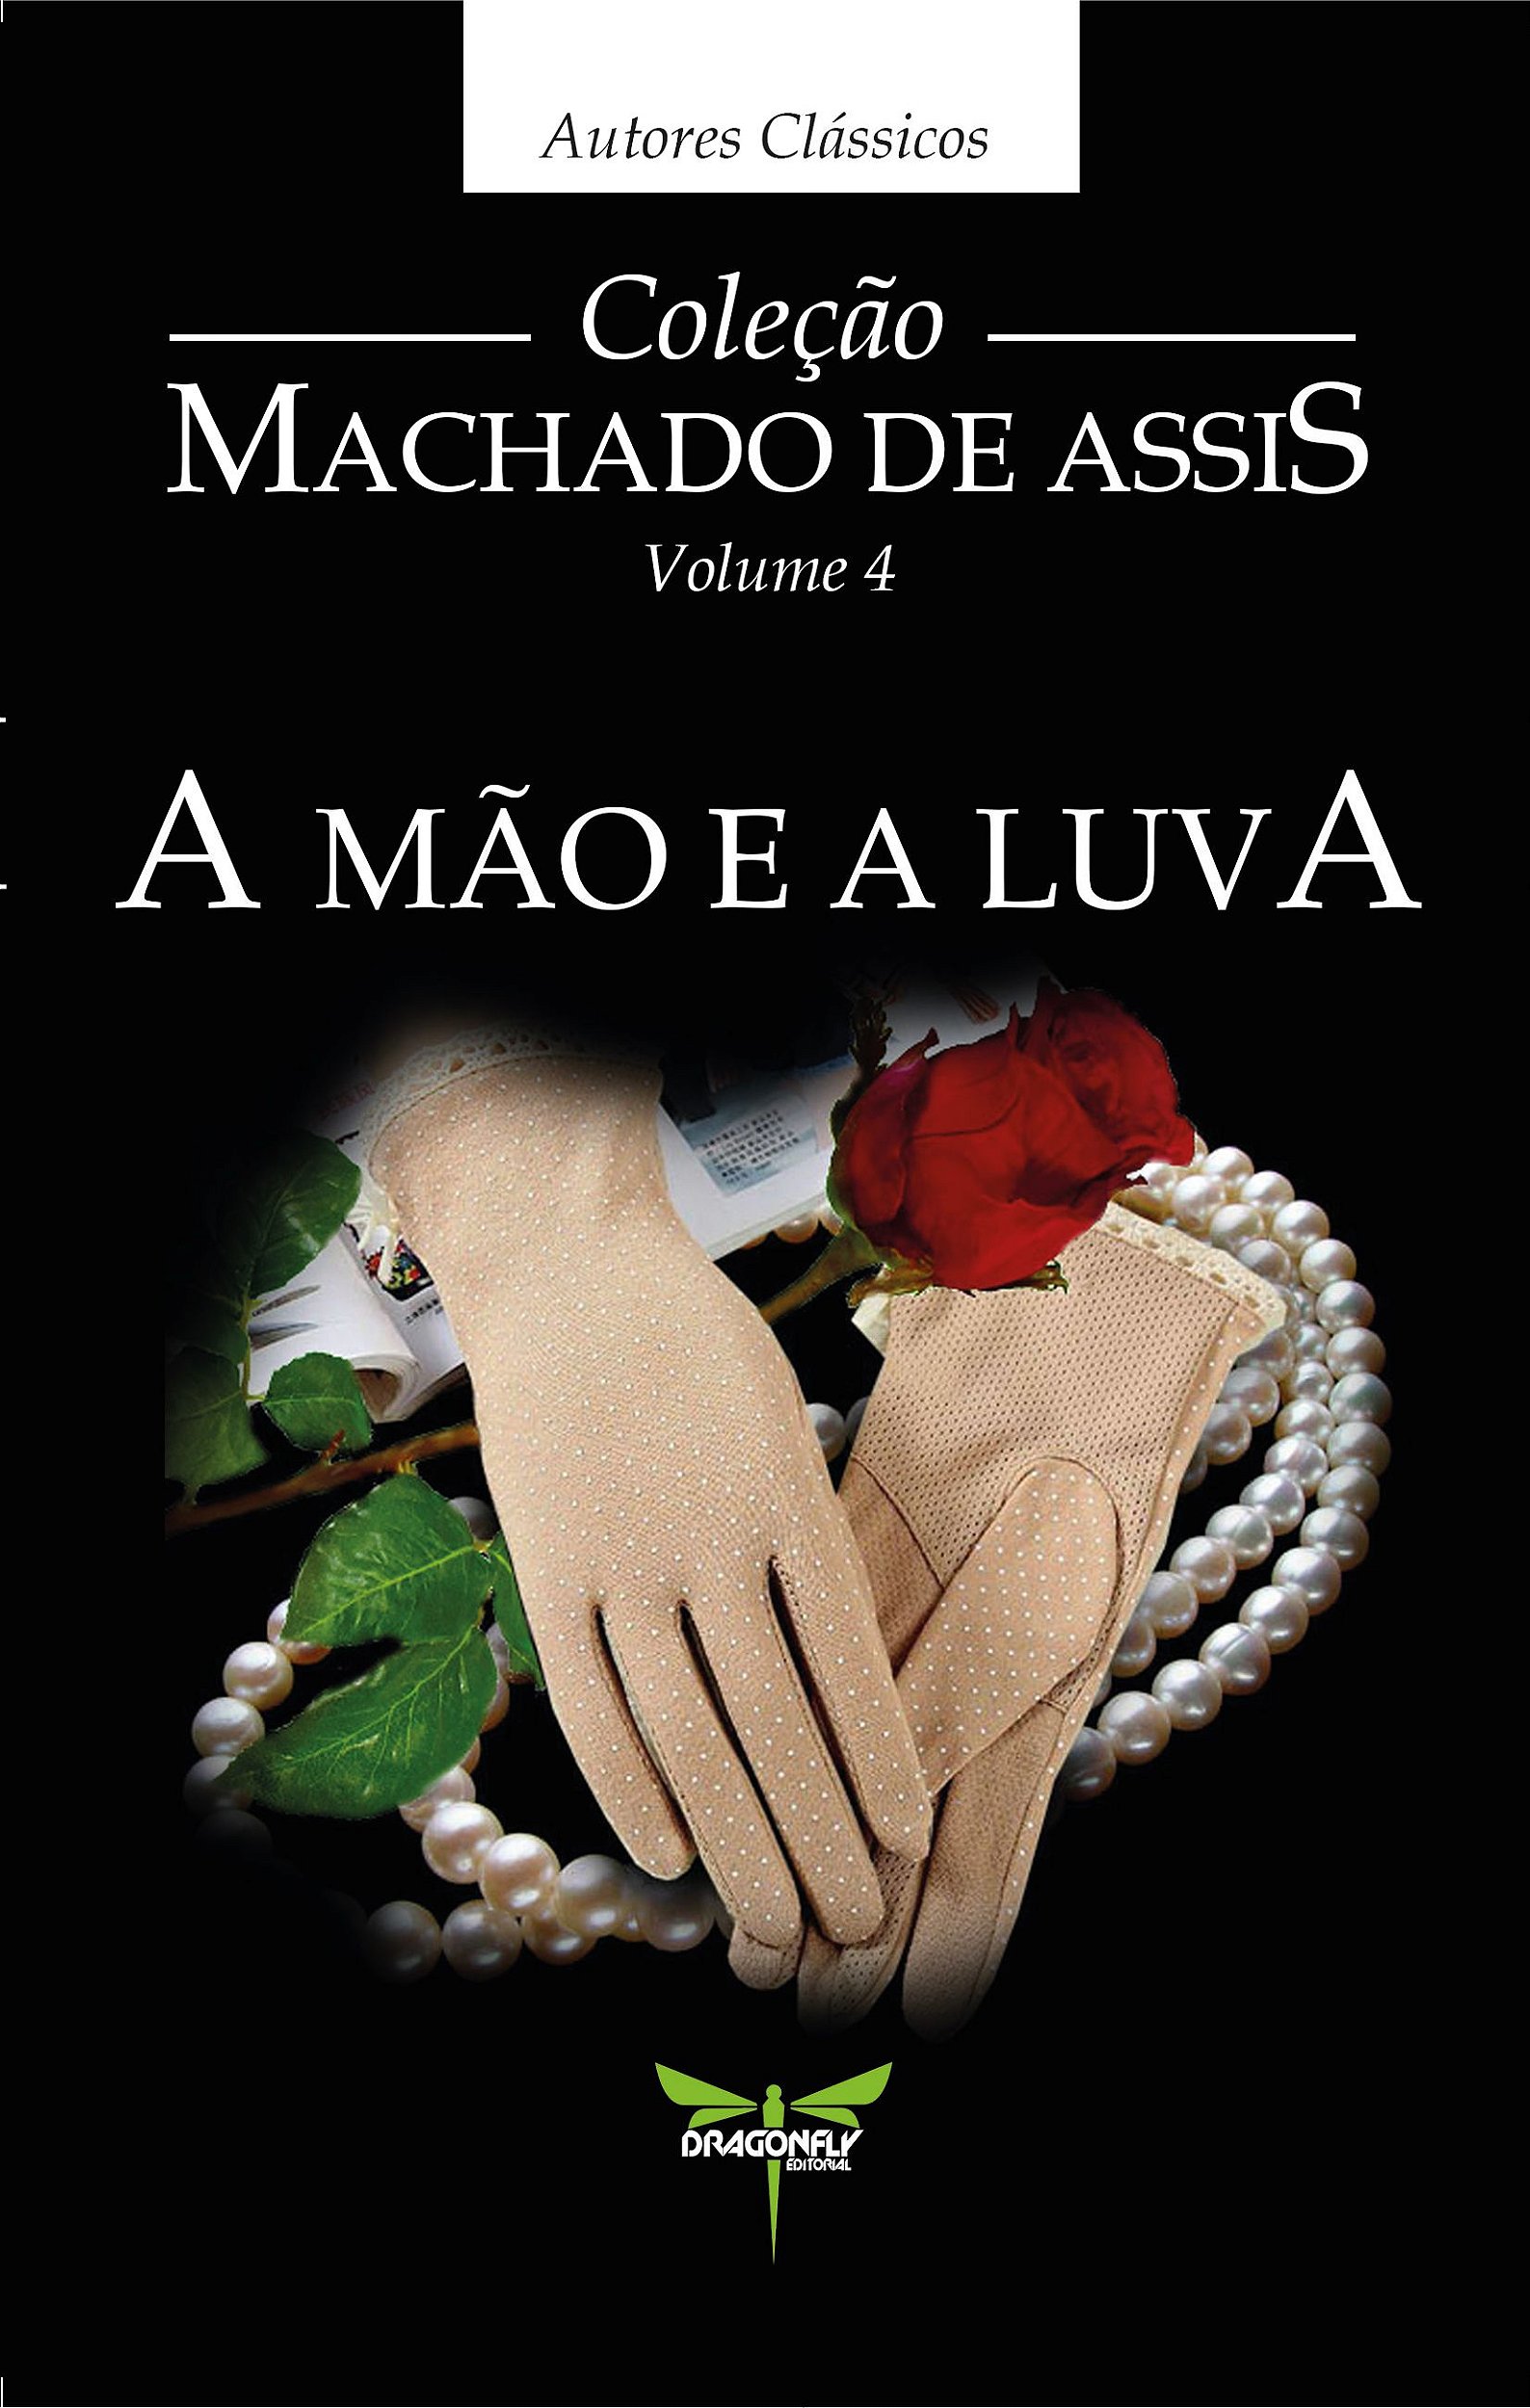 Livro - A Mão e a Luva ( Machado de Assis ) - Livros de Literatura -  Magazine Luiza